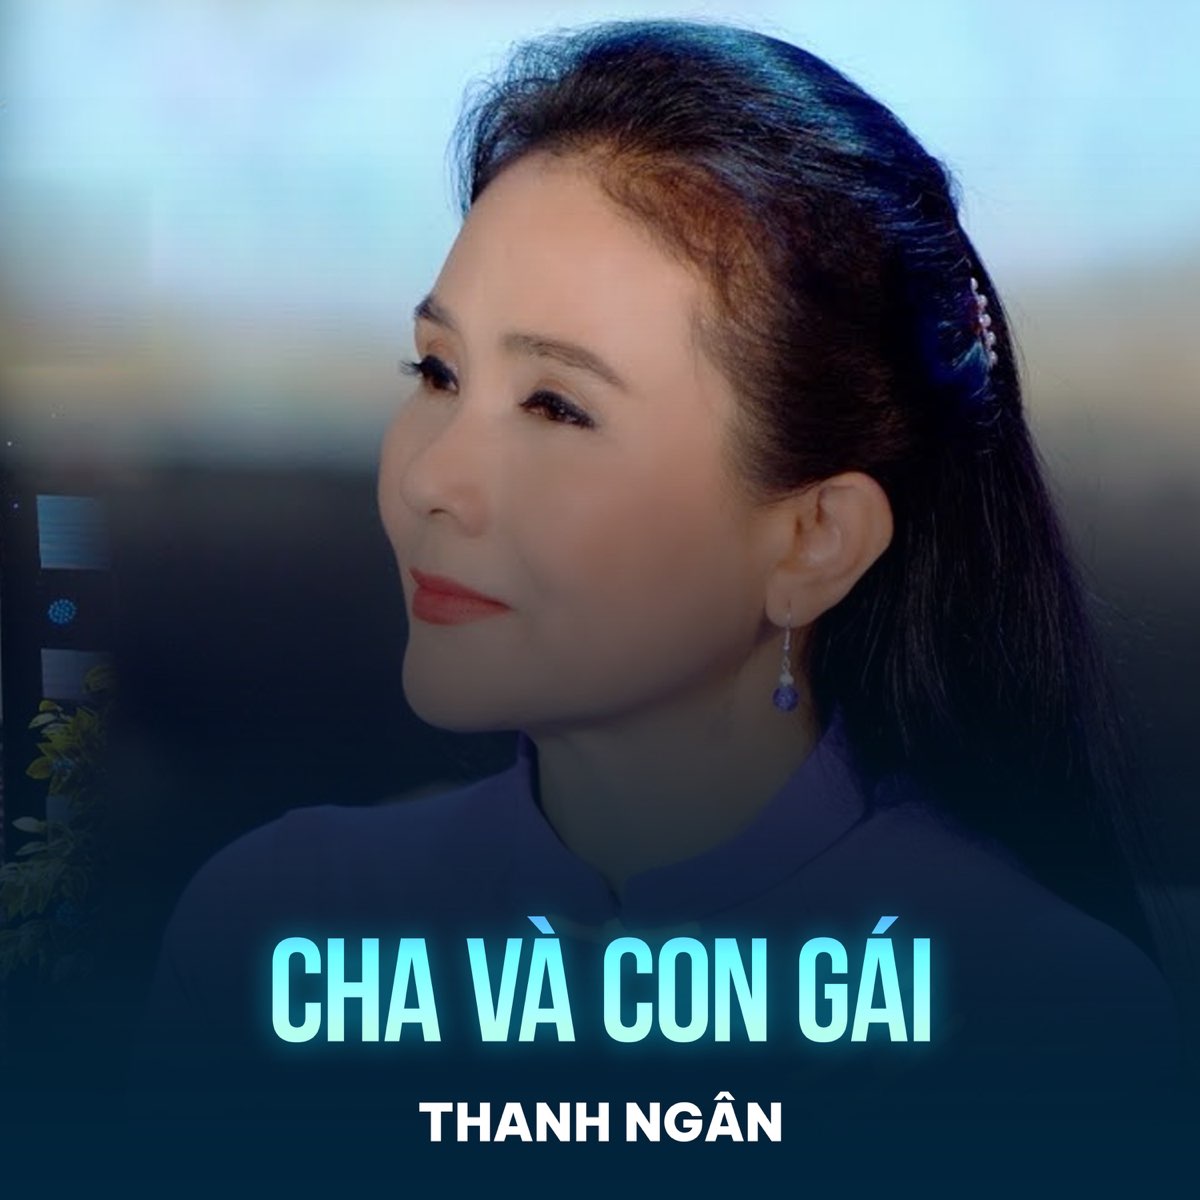 ‎Cha Và Con Gái - Single by Thanh Ngân on Apple Music